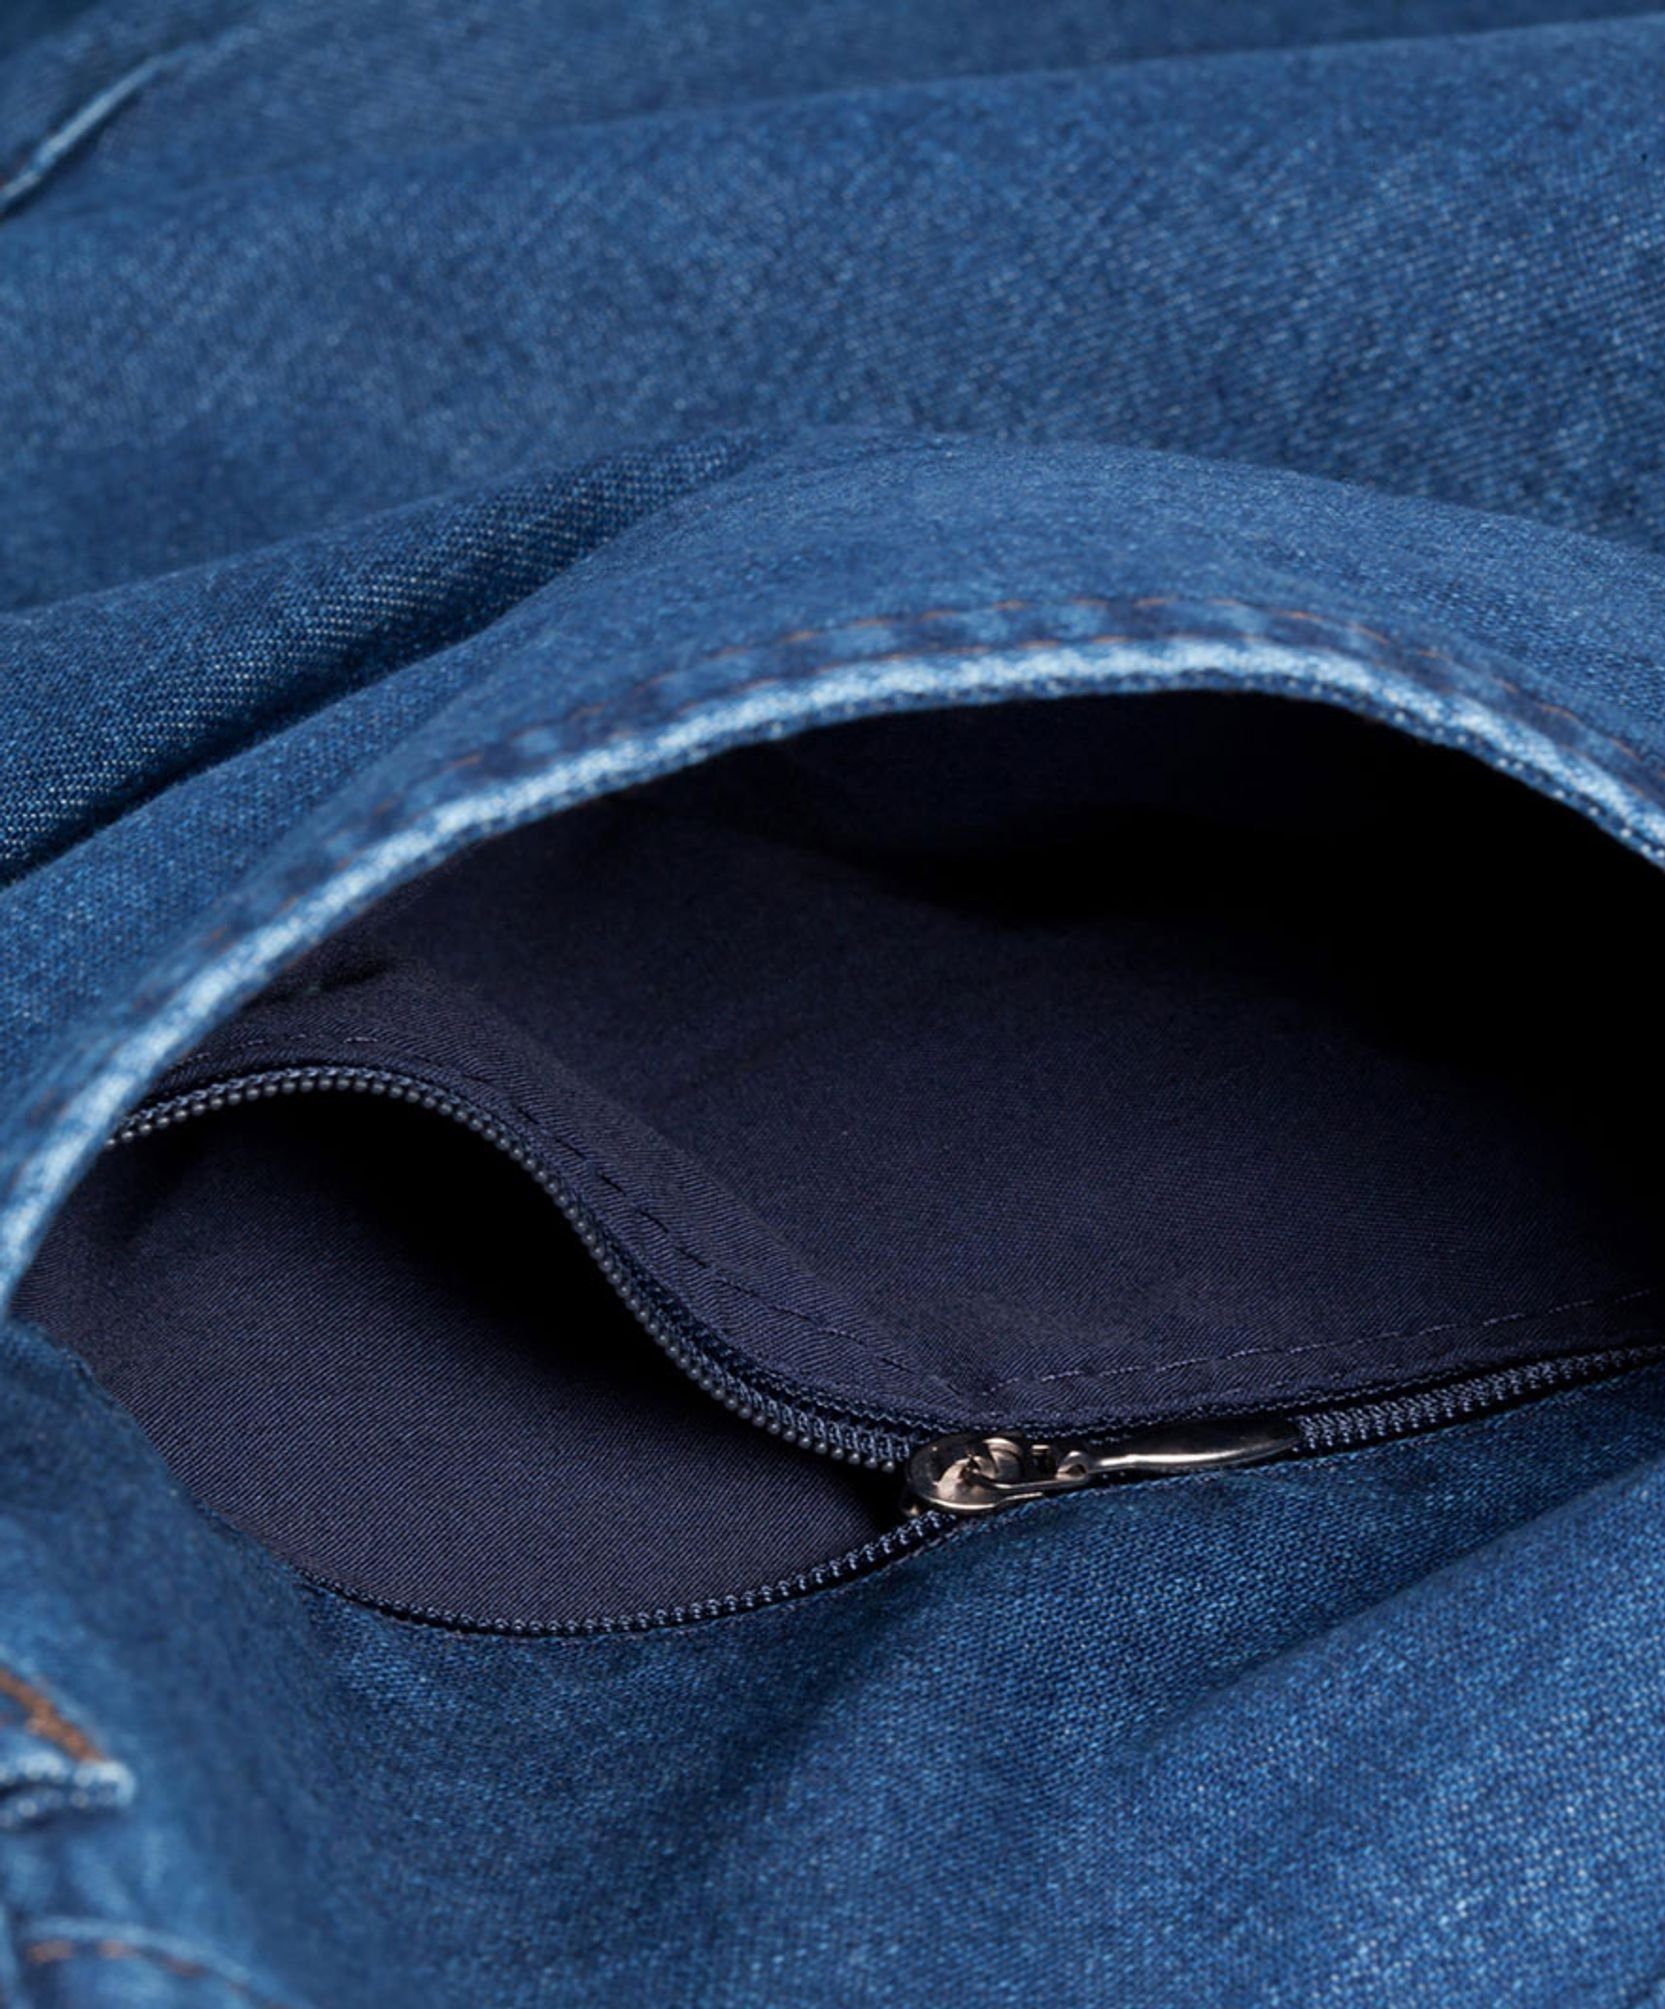 Blue EUREX 5-Pocket-Jeans (22) by Blue 50-6900 BRAX